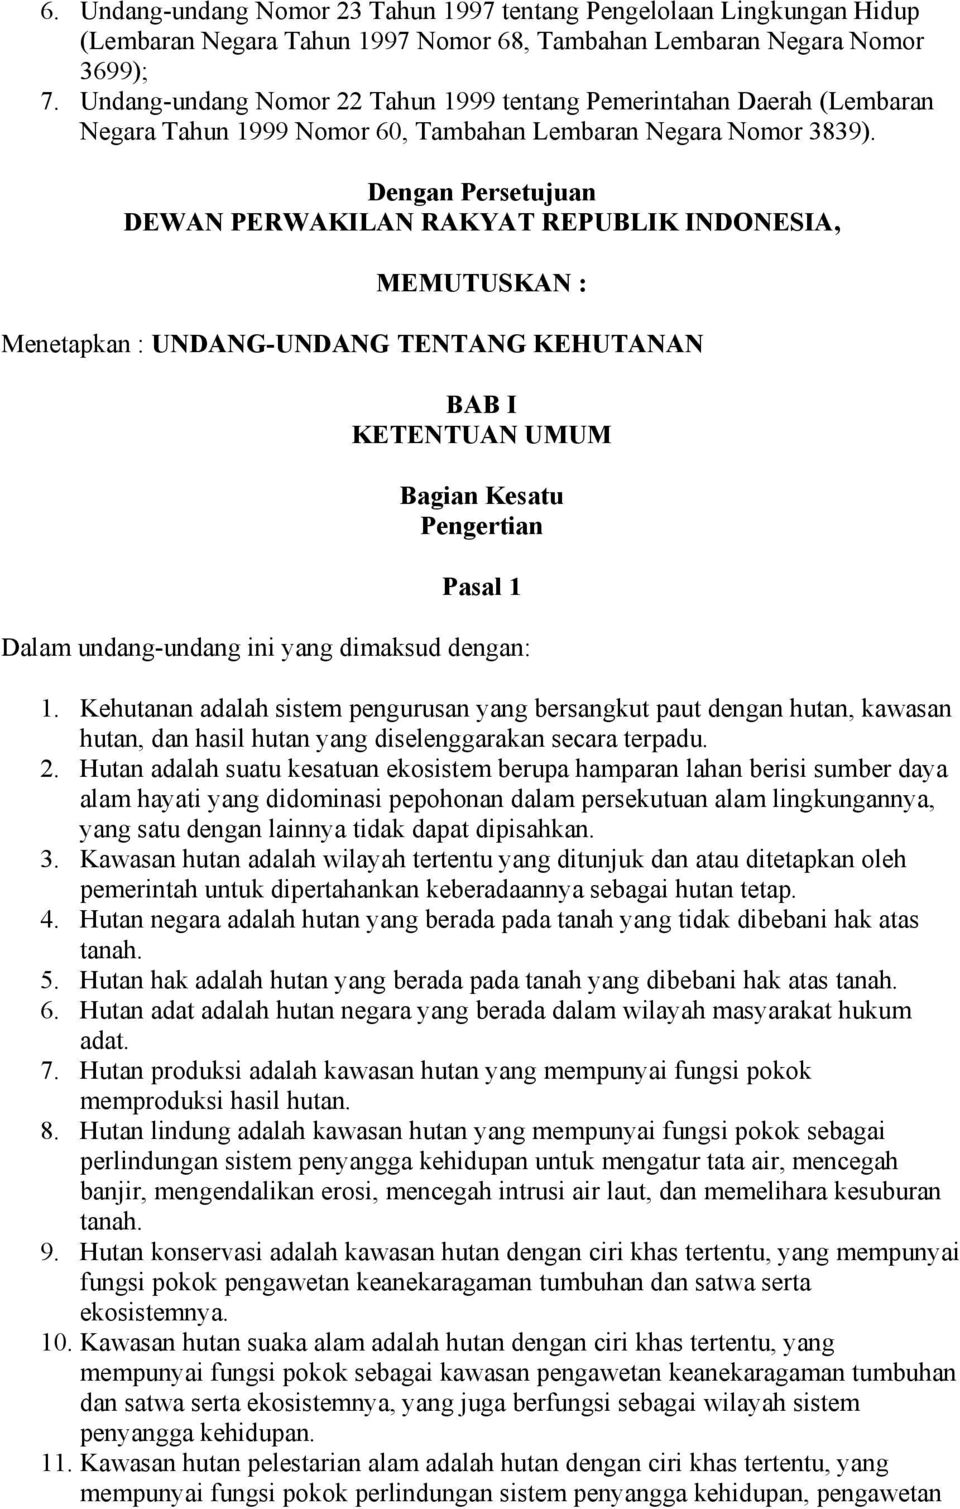 Dengan Persetujuan DEWAN PERWAKILAN RAKYAT REPUBLIK INDONESIA, MEMUTUSKAN : Menetapkan : UNDANG-UNDANG TENTANG KEHUTANAN BAB I KETENTUAN UMUM Bagian Kesatu Pengertian Pasal 1 Dalam undang-undang ini